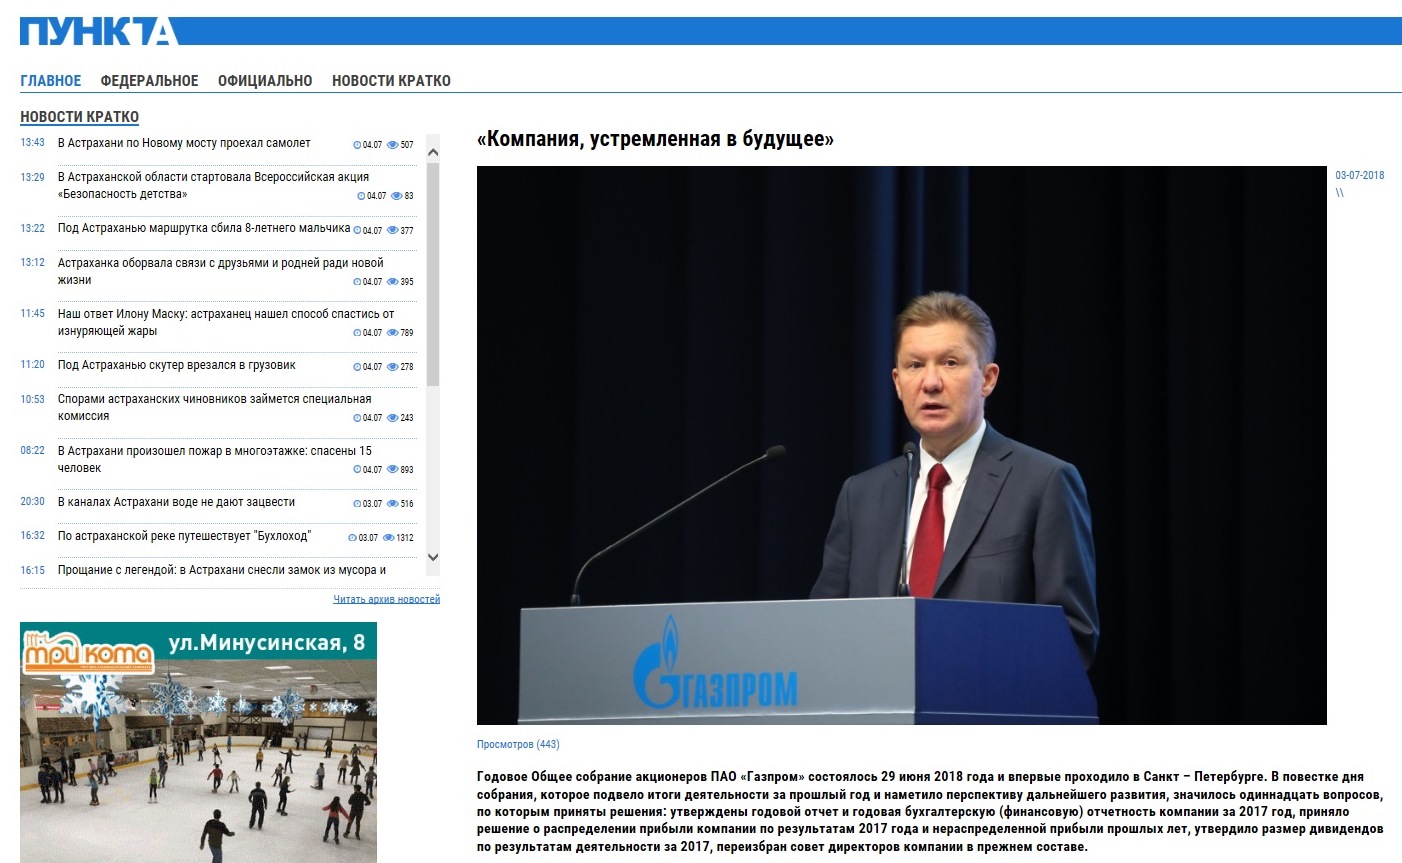 Річні Загальні збори акціонерів ПАТ «Газпром» відбулося 29 червня 2018 року і вперше проходило в Санкт - Петербурзі